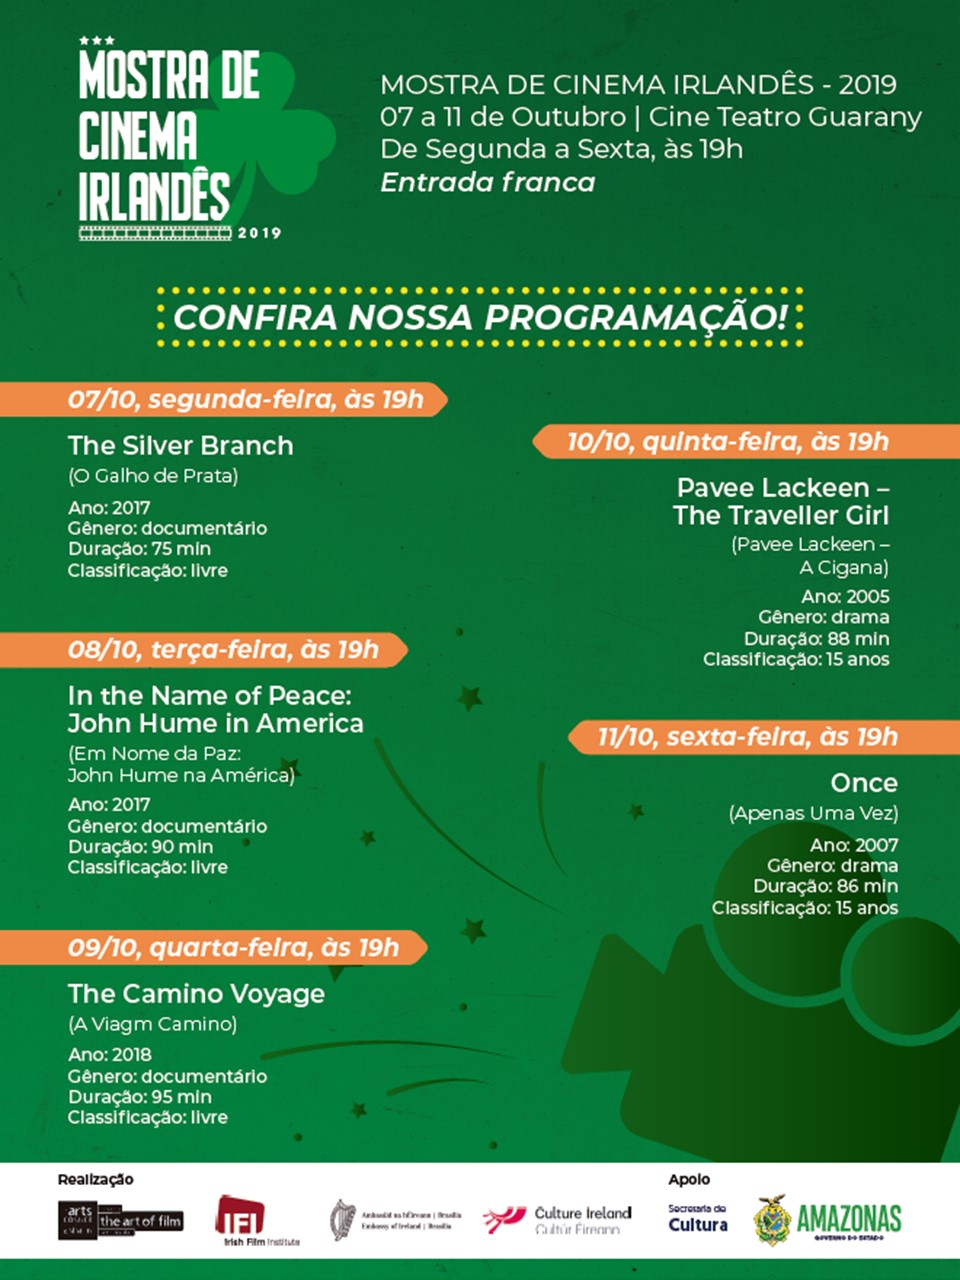 Irish Film Festival Coming to Manaus, 7-11 October